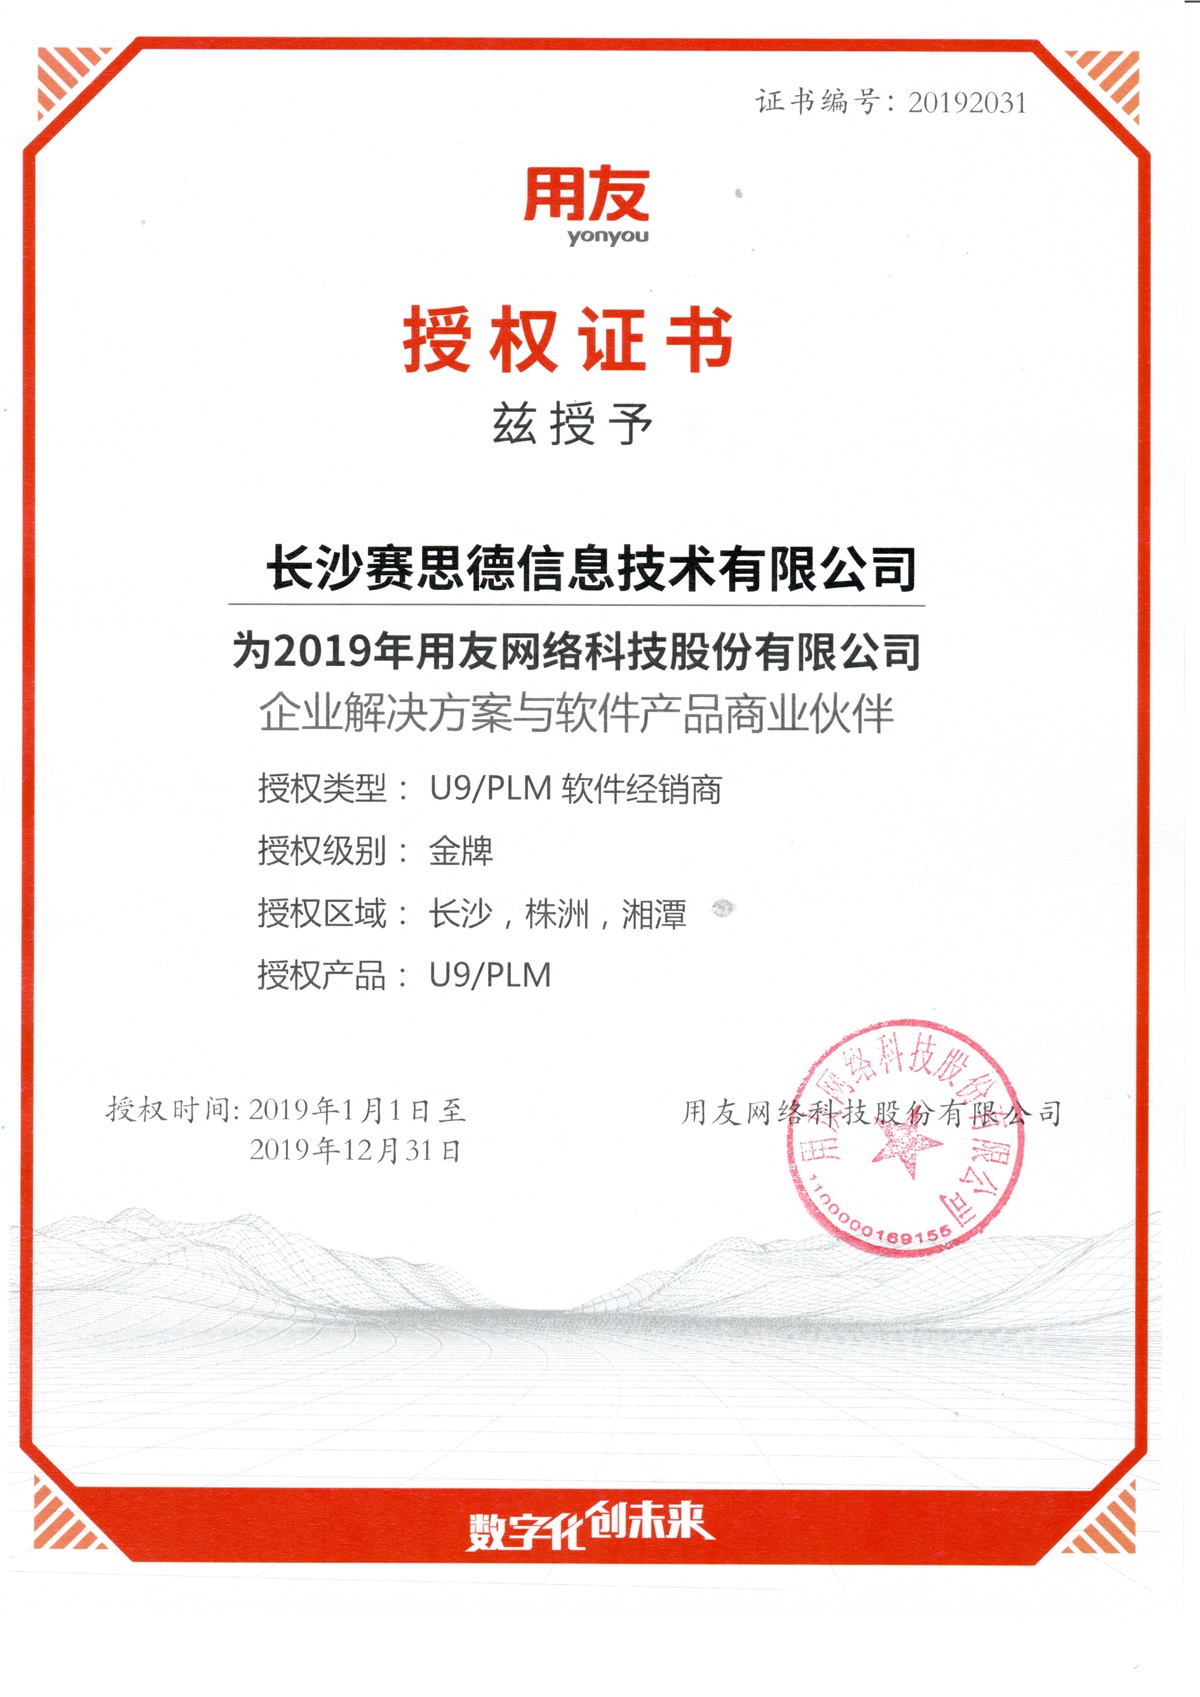 2019年度用友U9/PLM授权证书